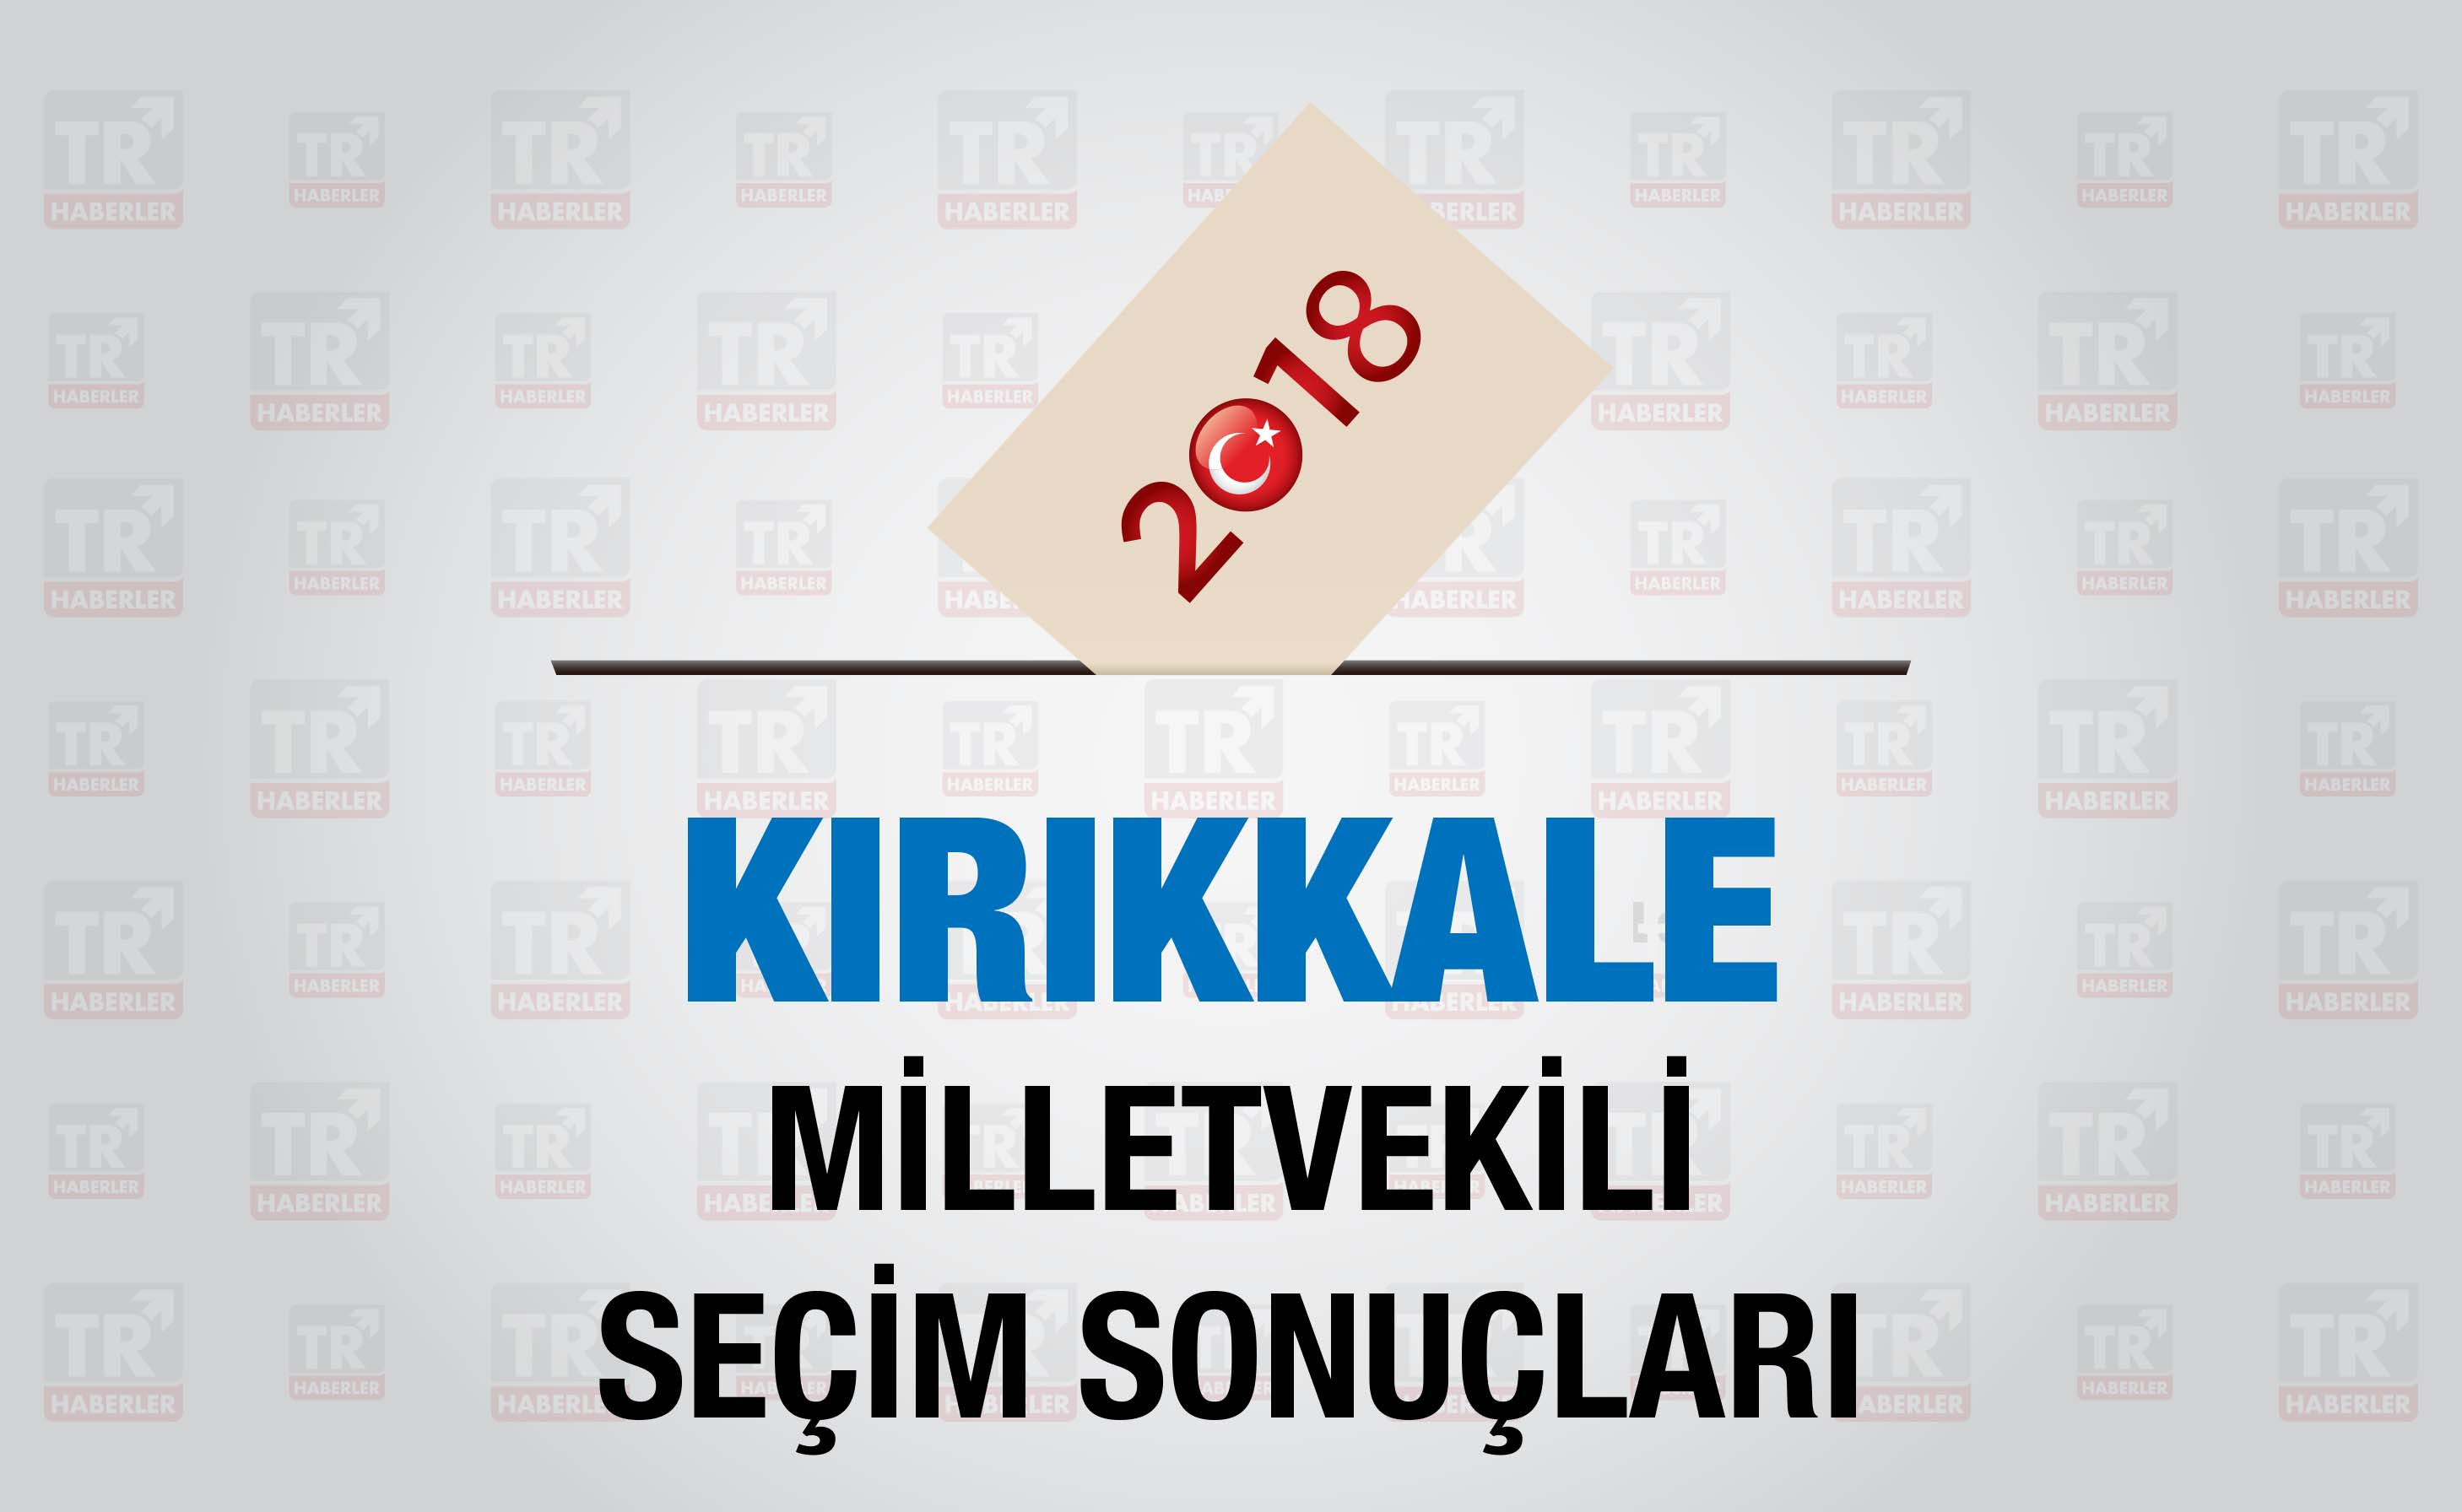 Kırıkkale seçim sonuçları : Kırıkkale Milletvekili seçim sonuçları - Seçim 2018